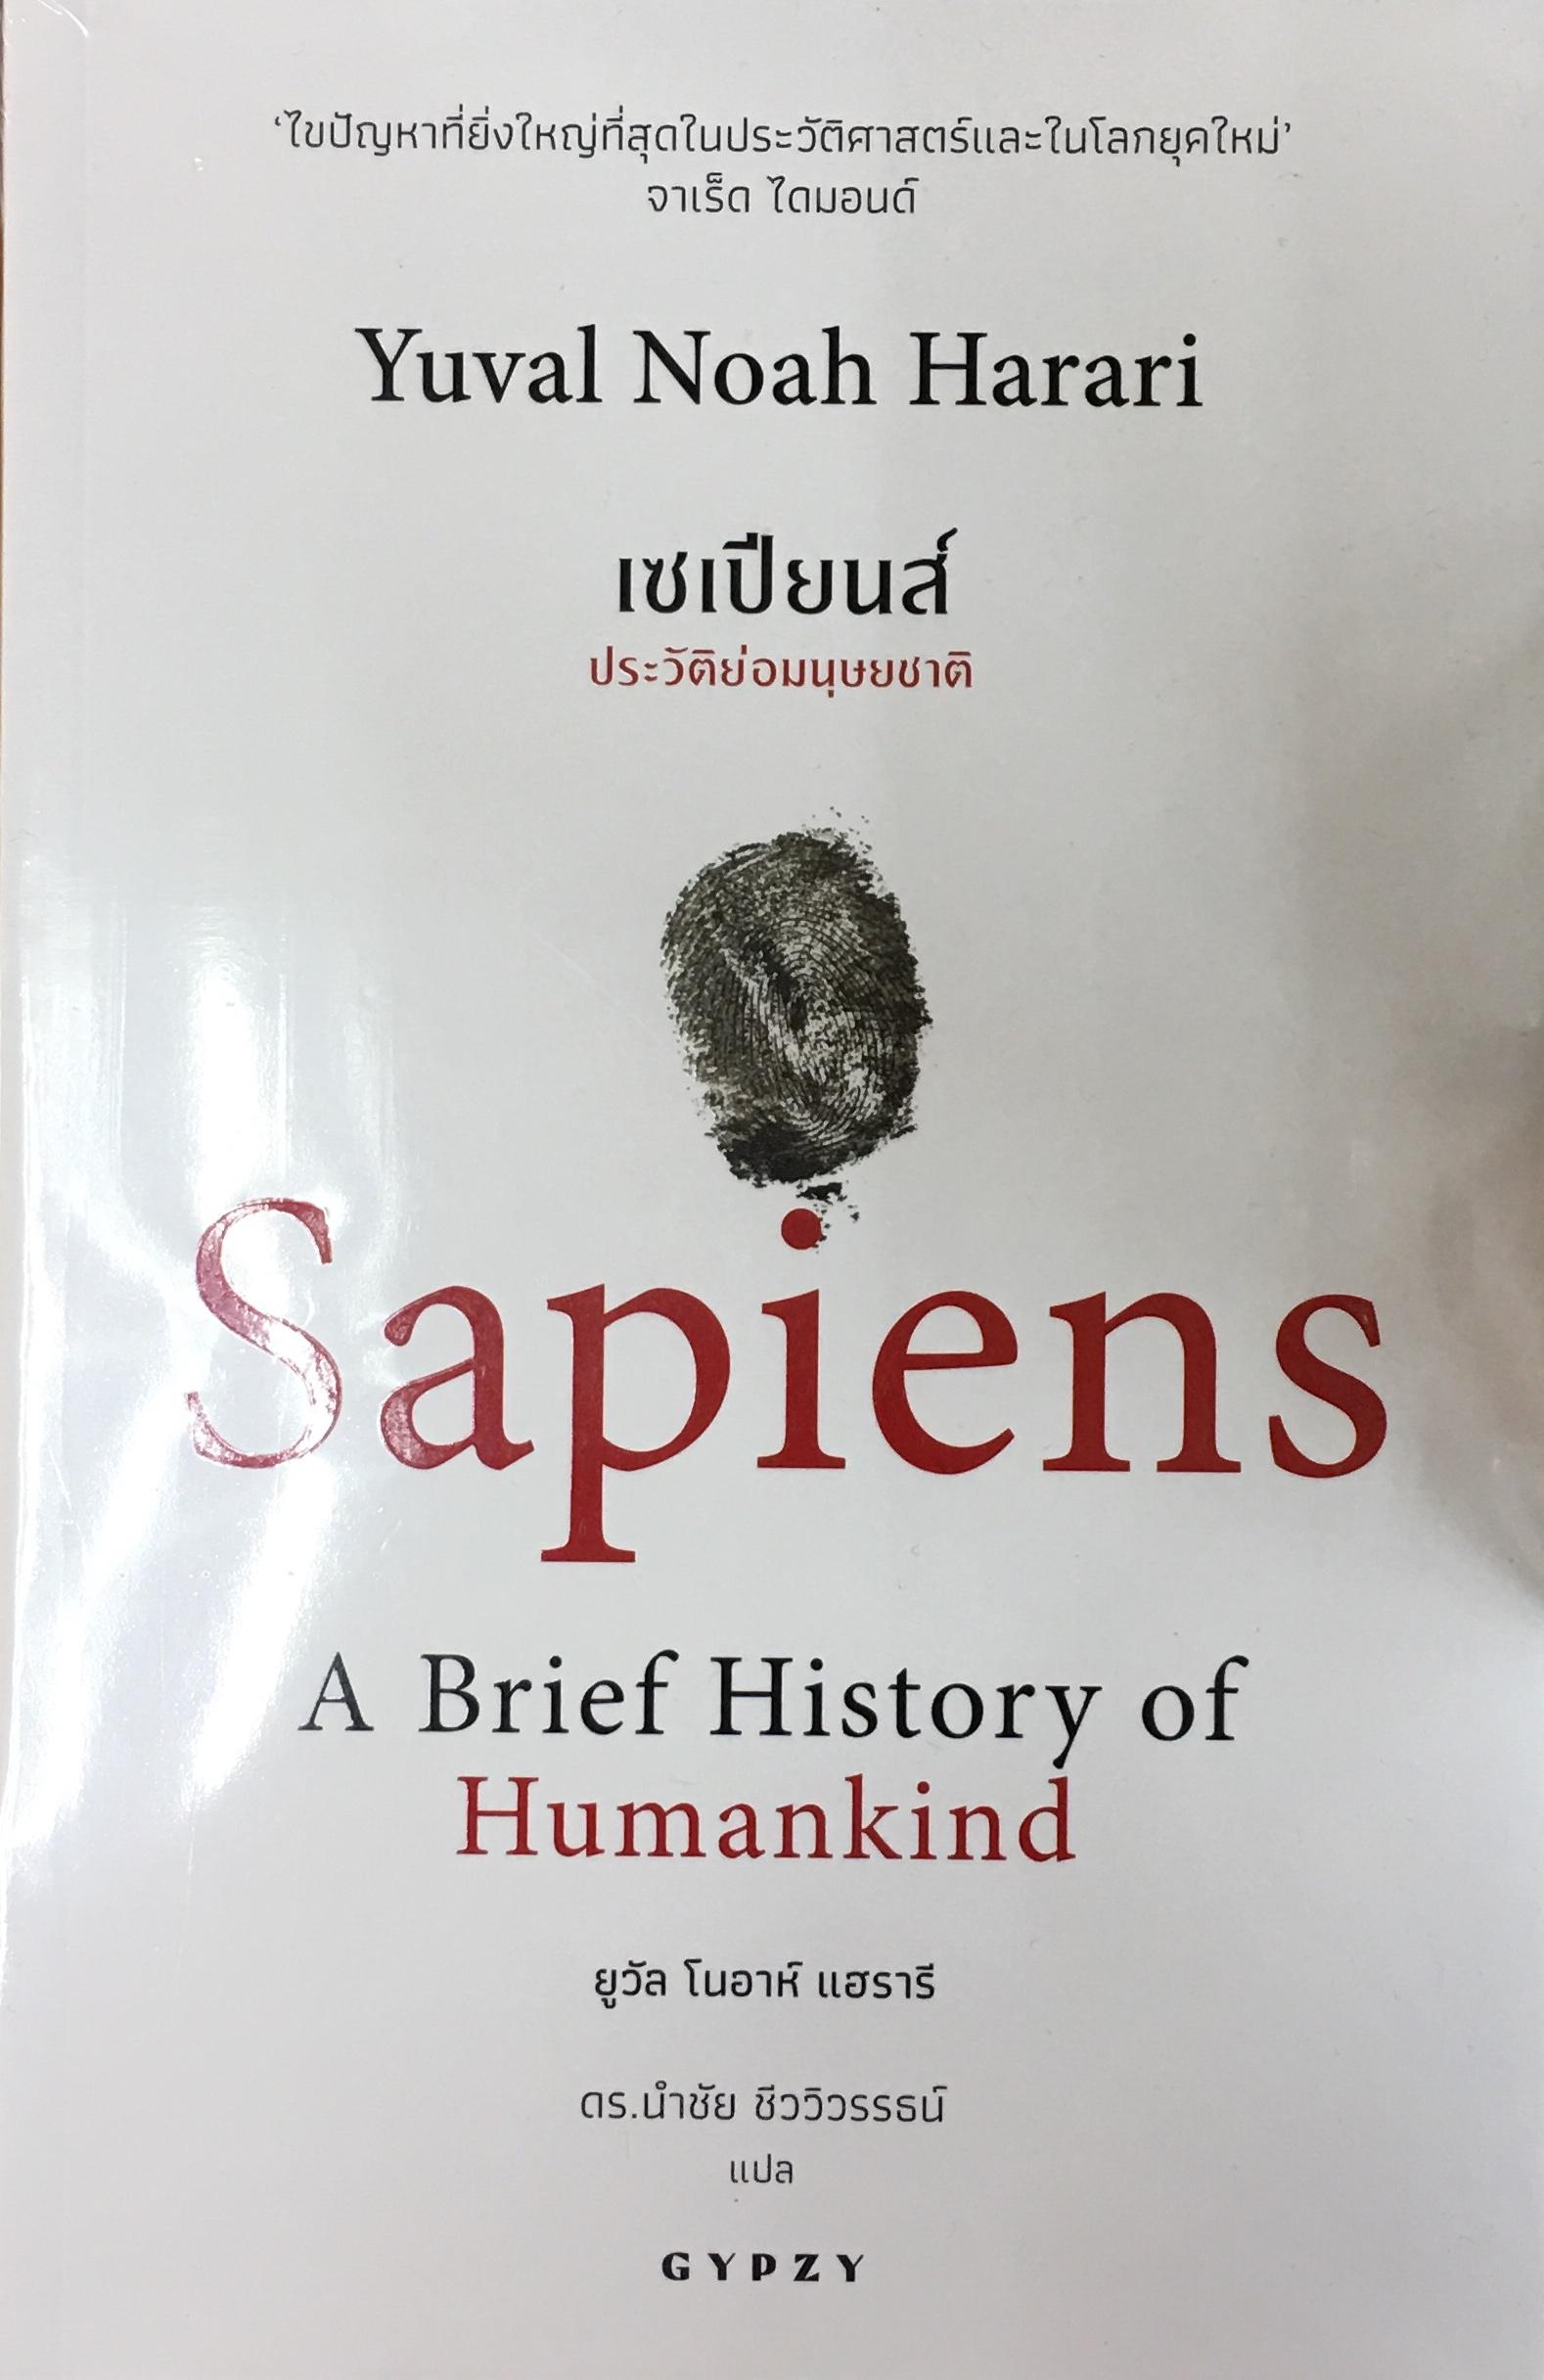 Sapiens : A Brief History of Humankind  เซเปียนส์ : ประวัติย่อมนุษยชาติ